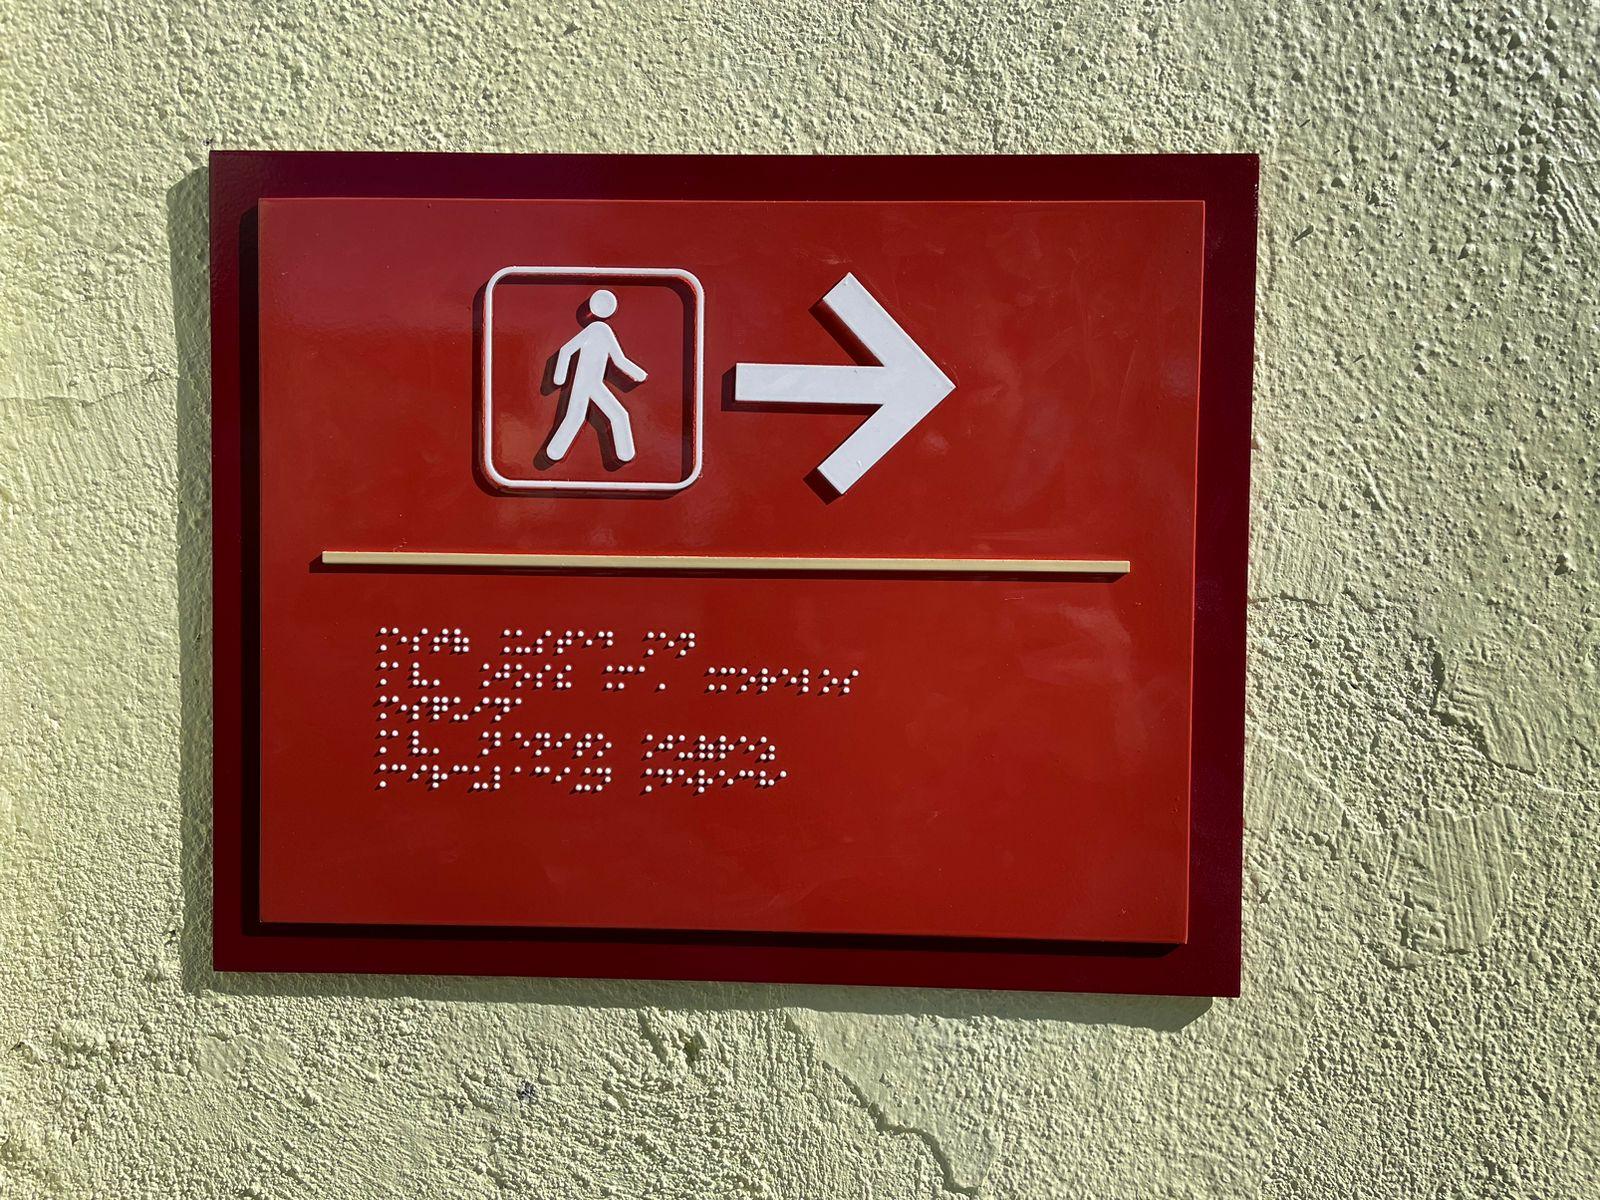 Instala ayuntamiento capitalino señalización con sistema braille